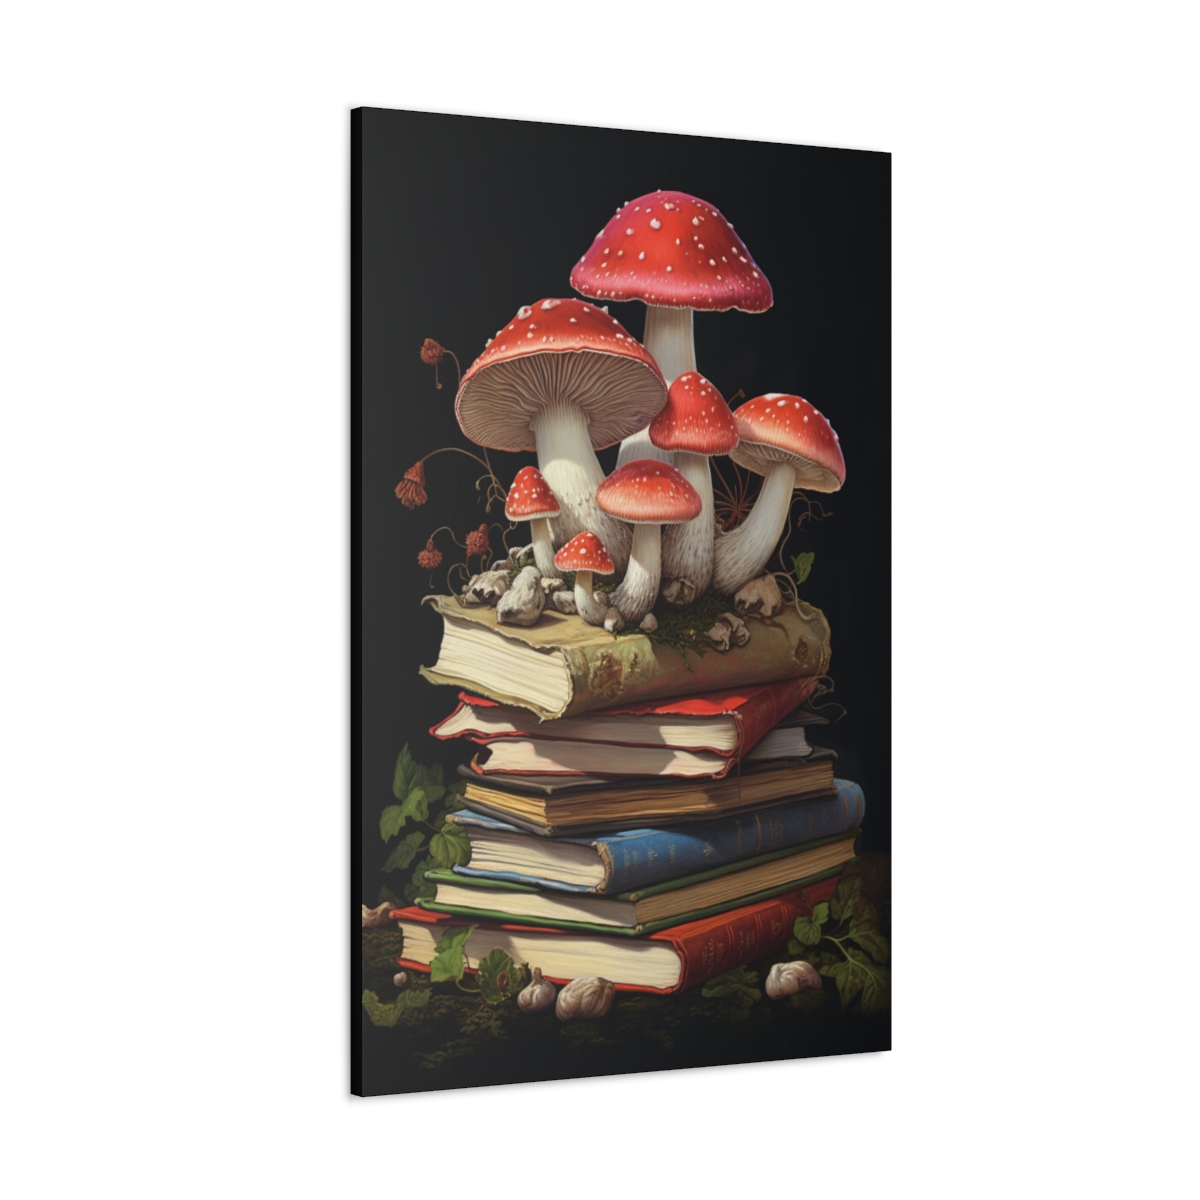 Mushroom Art Canvas Print: Vintage Shroom